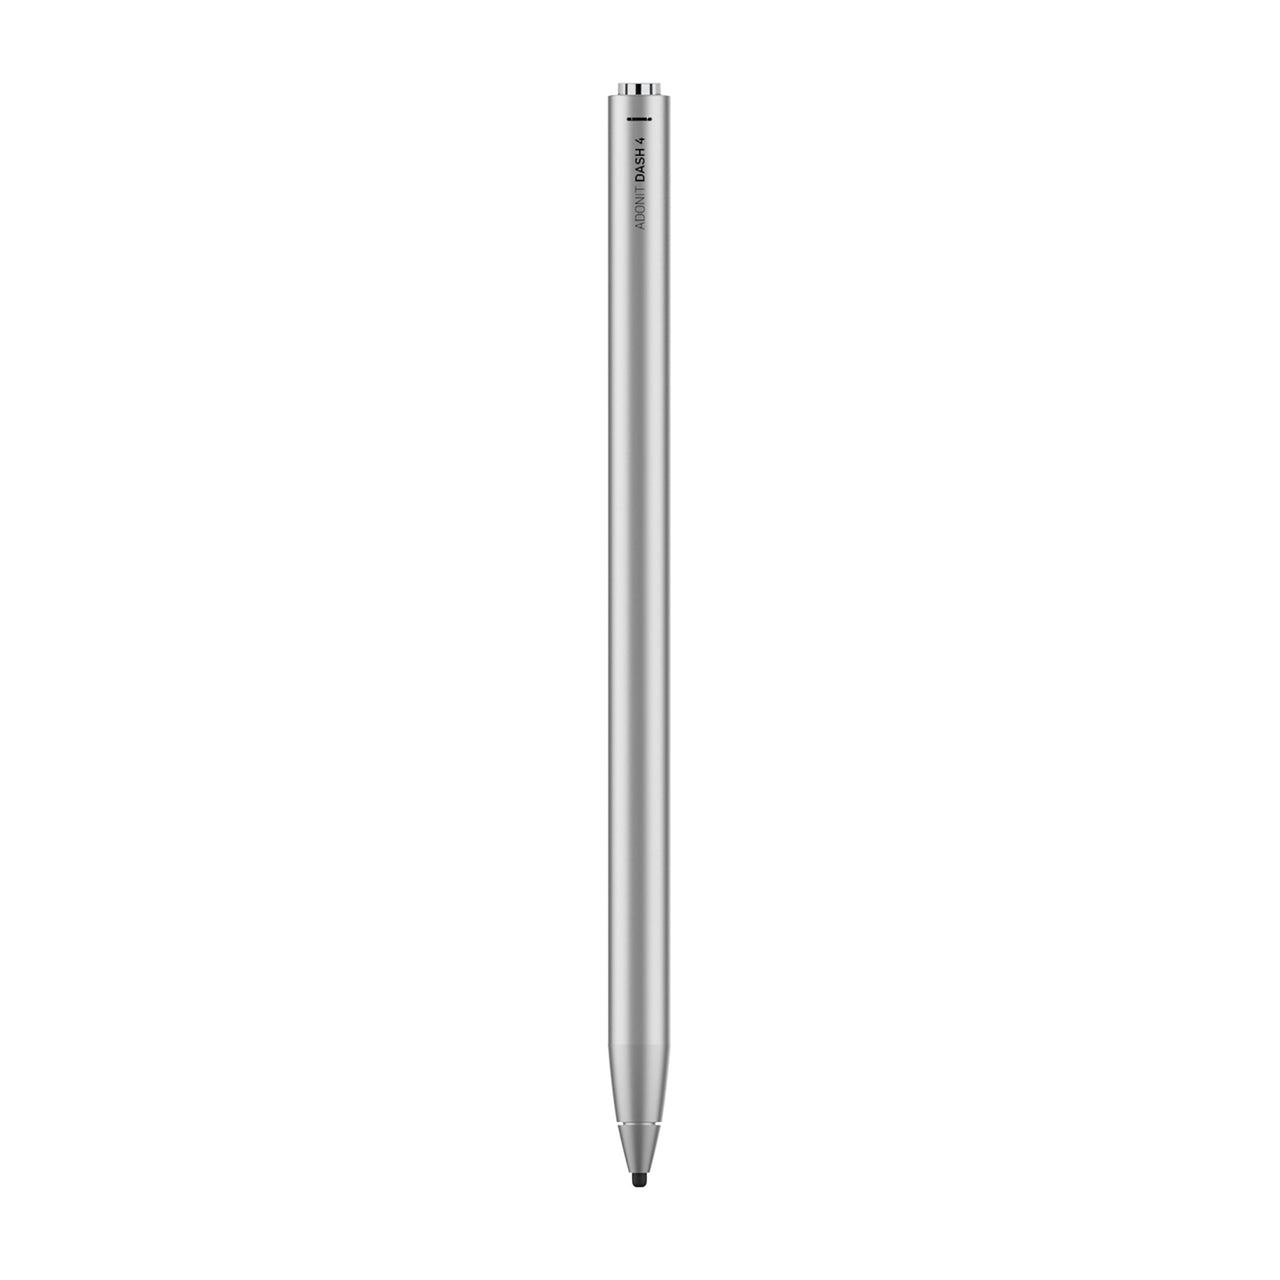 Adonit Dash 4 Stylus Pen - Silver